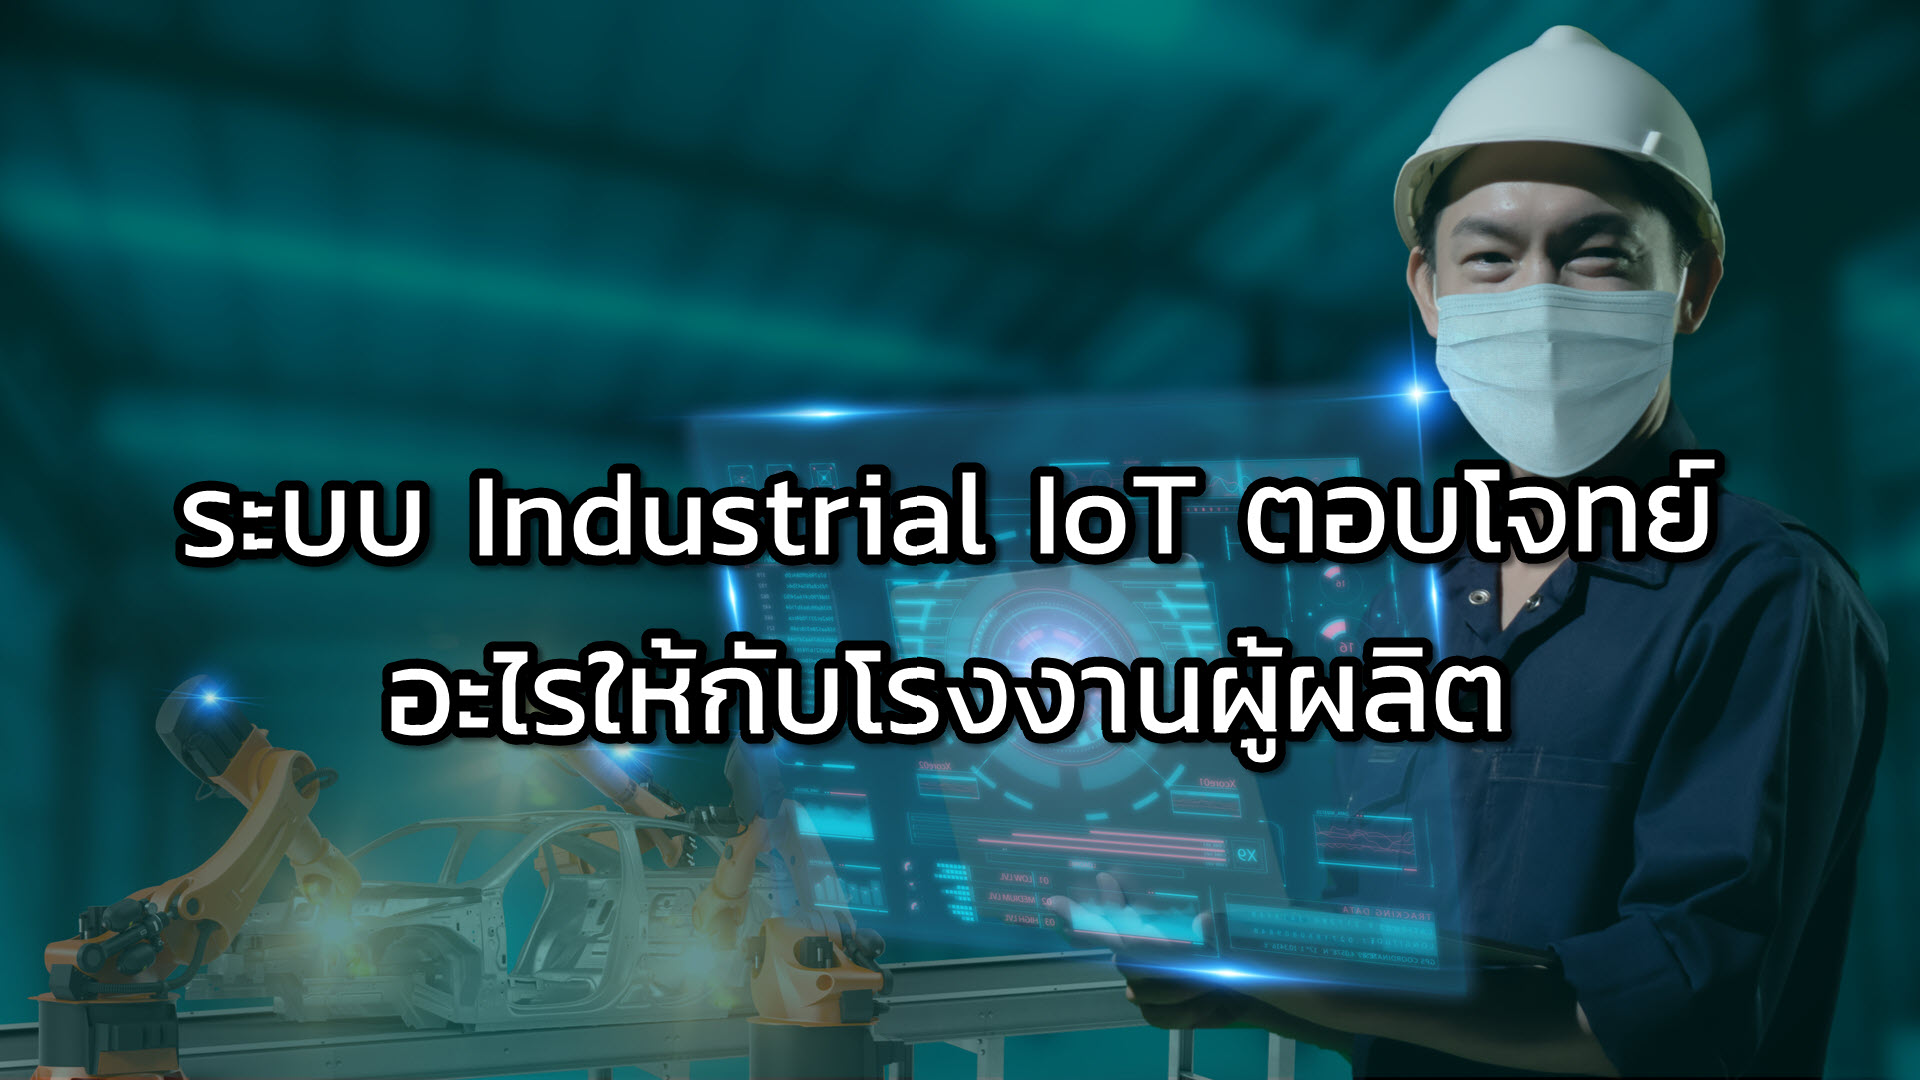 ระบบ Industrial IoT ตอบโจทย์อะไรให้กับโรงงานผู้ผลิต cover image